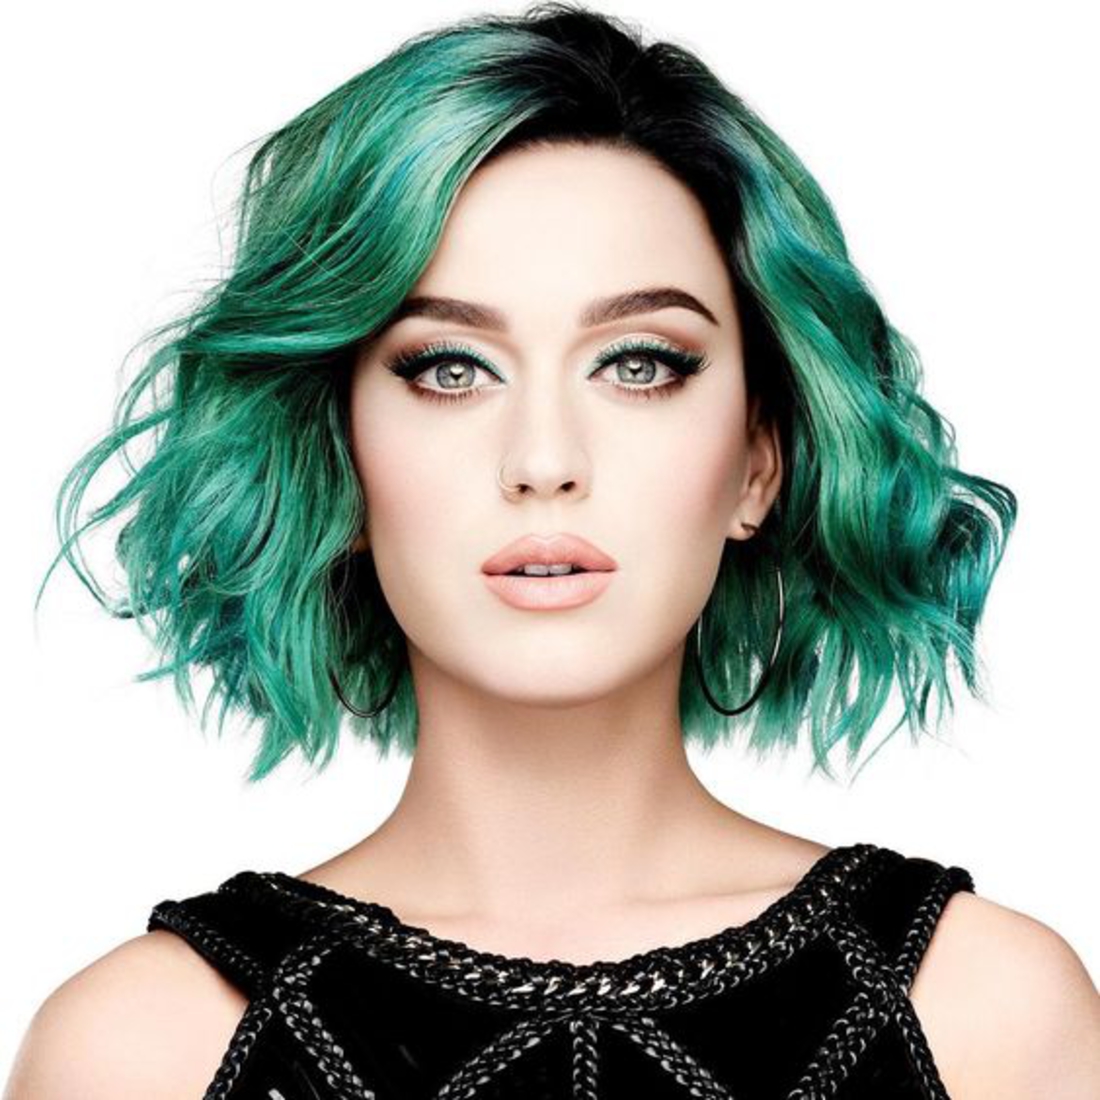 katy perry, carré flou vert, robe noire, effet coiffé décoiffé, look extravagante, modele coupe de cheveux boheme